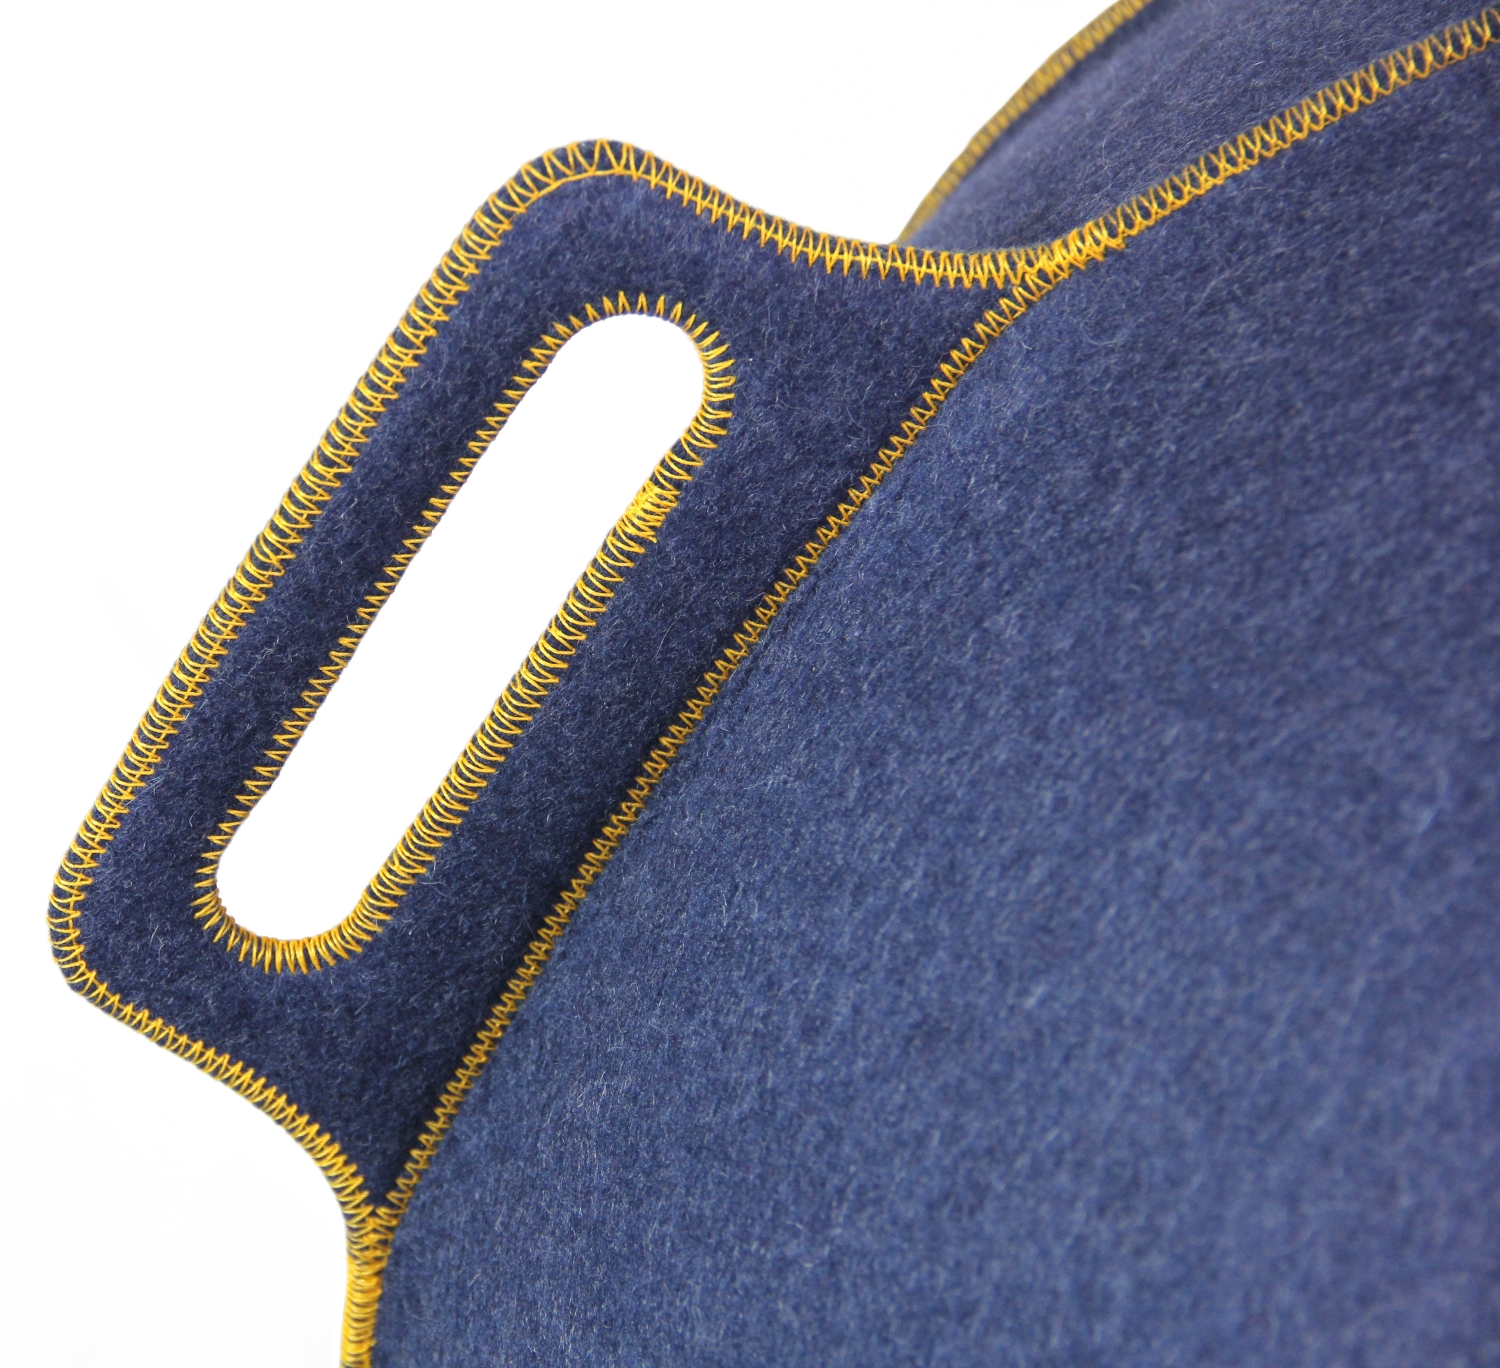 VLUV VELT hochwertiger Filz-Sitzball 60-65cm jeans/gold ergonomisches Design-Sitzmöbel mit Tragegriff